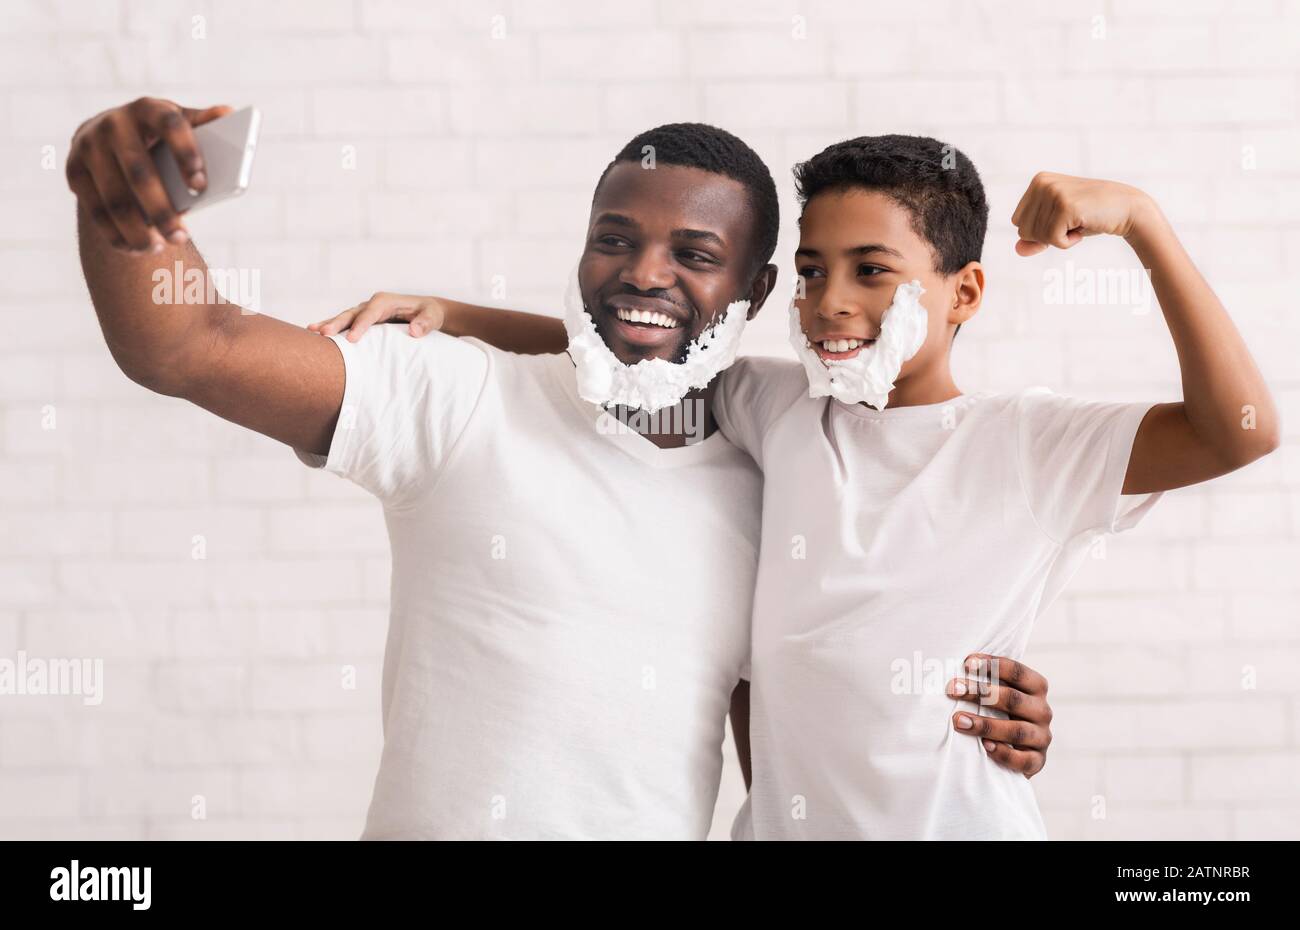 Männliche selfie. Vater und Sohn gemeinsam Spaß haben, mit Rasierschaum auf Handy Kamera posieren, grau studio Hintergrund Stockfoto